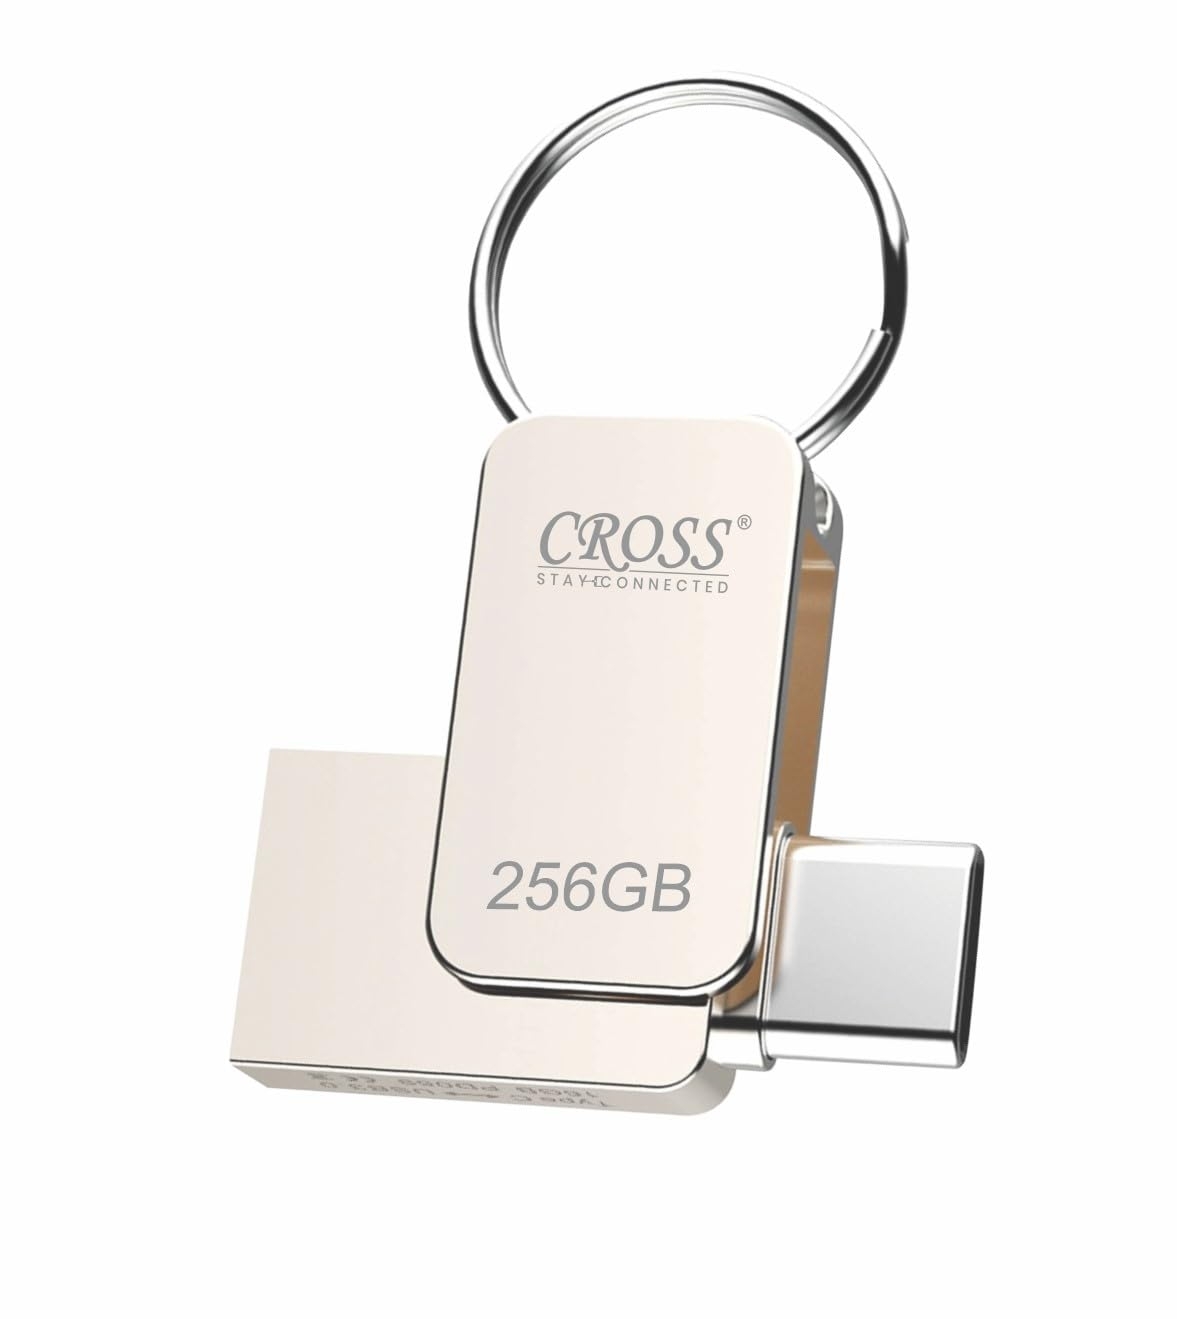 CROSS Type-C OTG PENDRIVE 256GB Pen Drive | Silver Metal Body | External Storage Device flashdrive